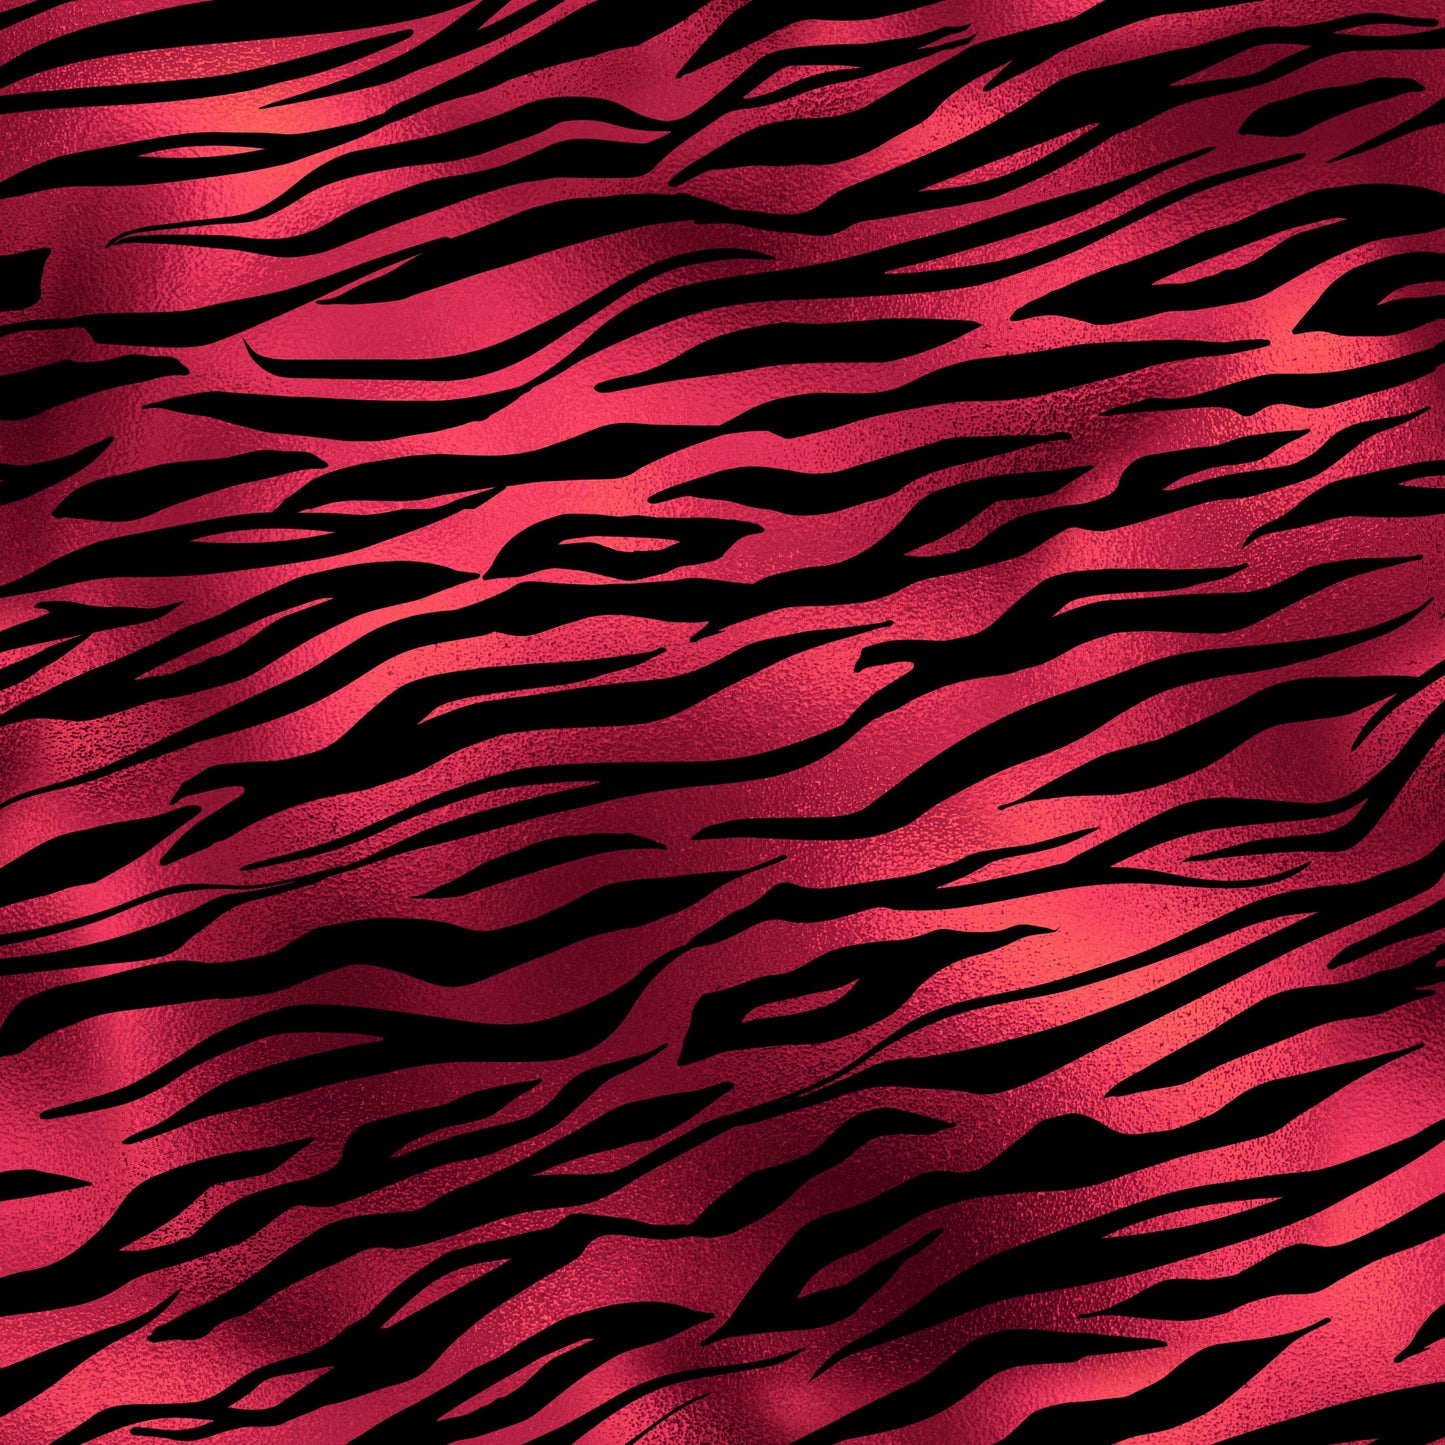 Red Tiger Print Foil Effect Vinyl Furniture Wrap